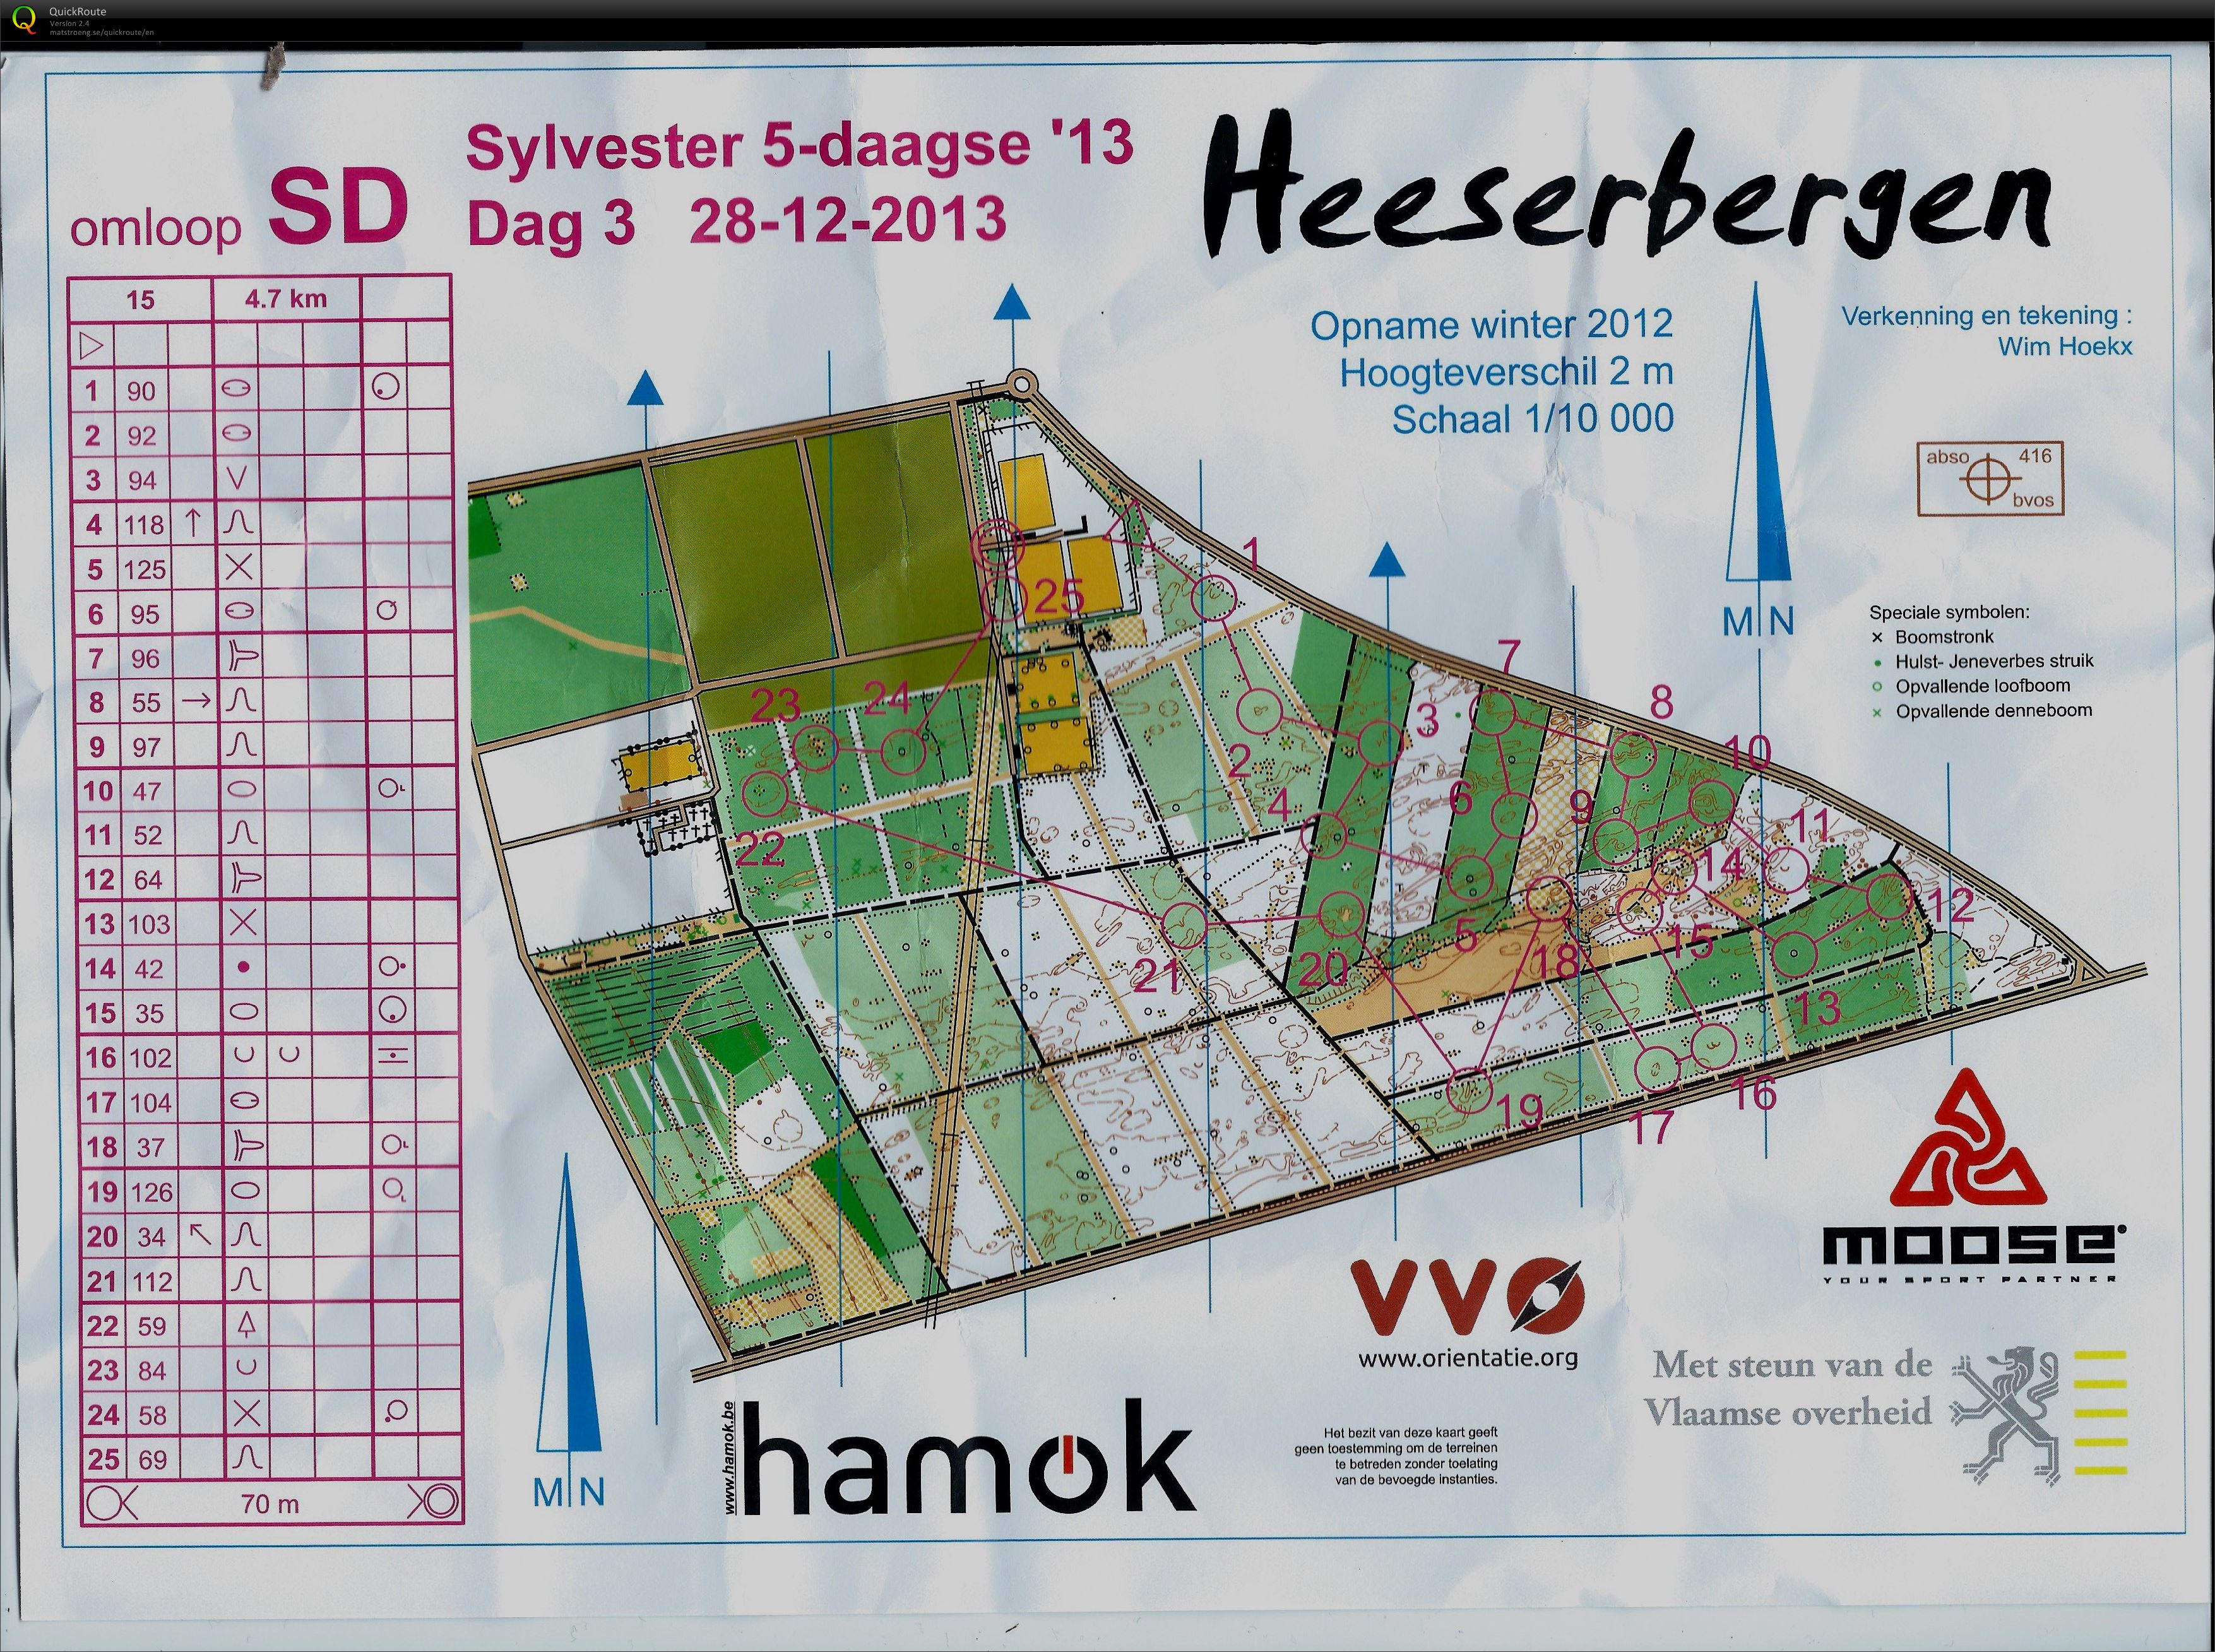 Heeserbergen (28-12-2013)